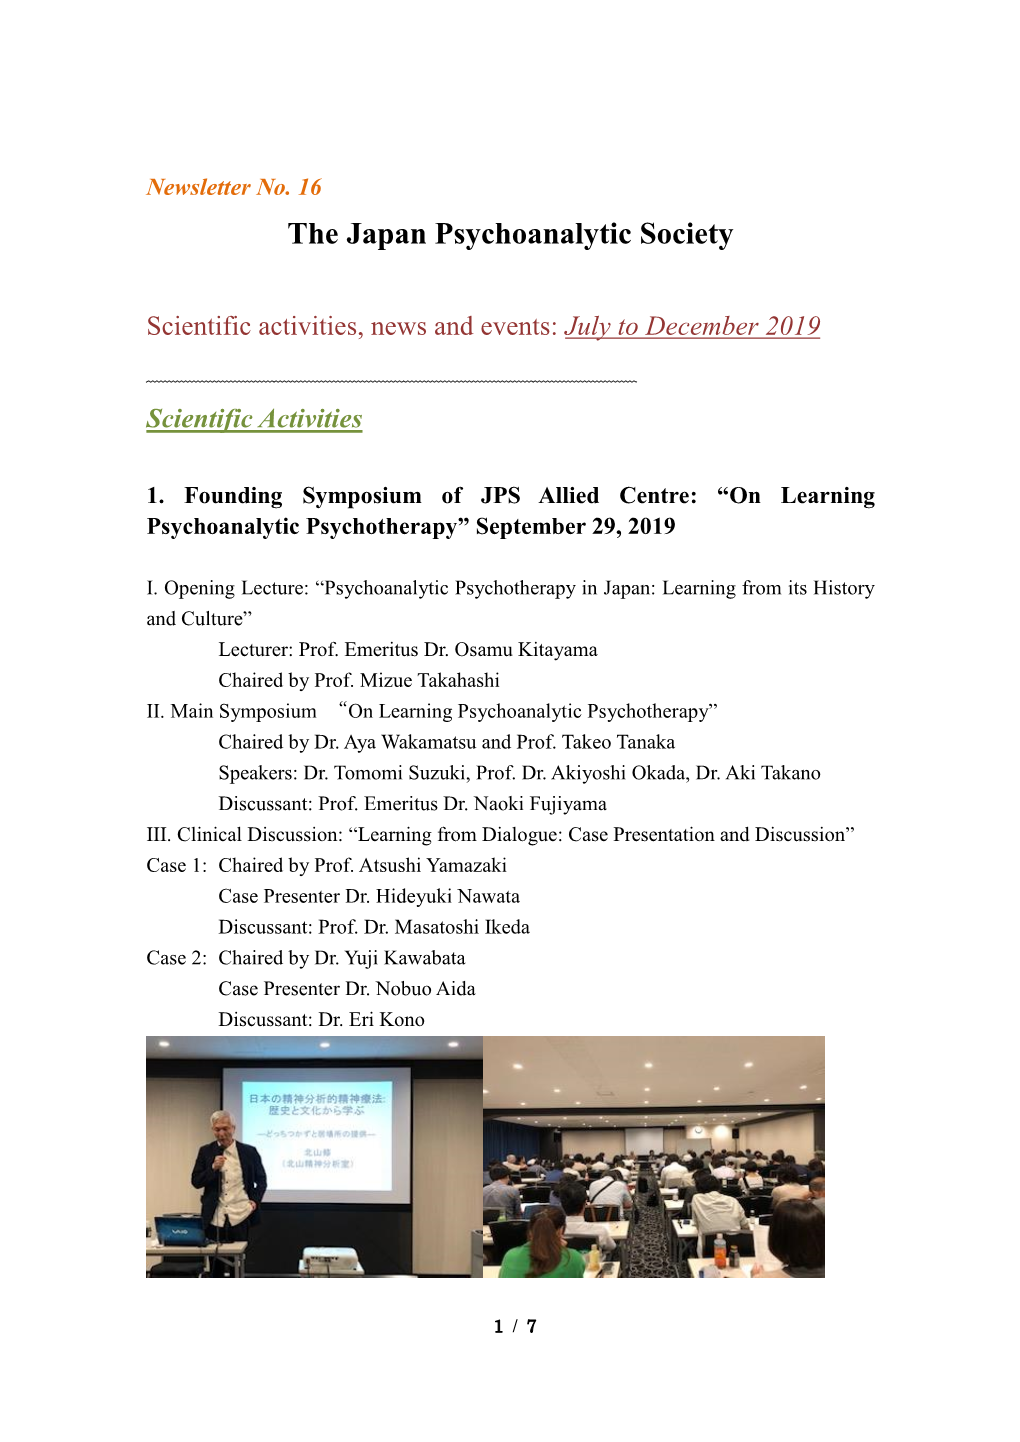 The Japan Psychoanalytic Society